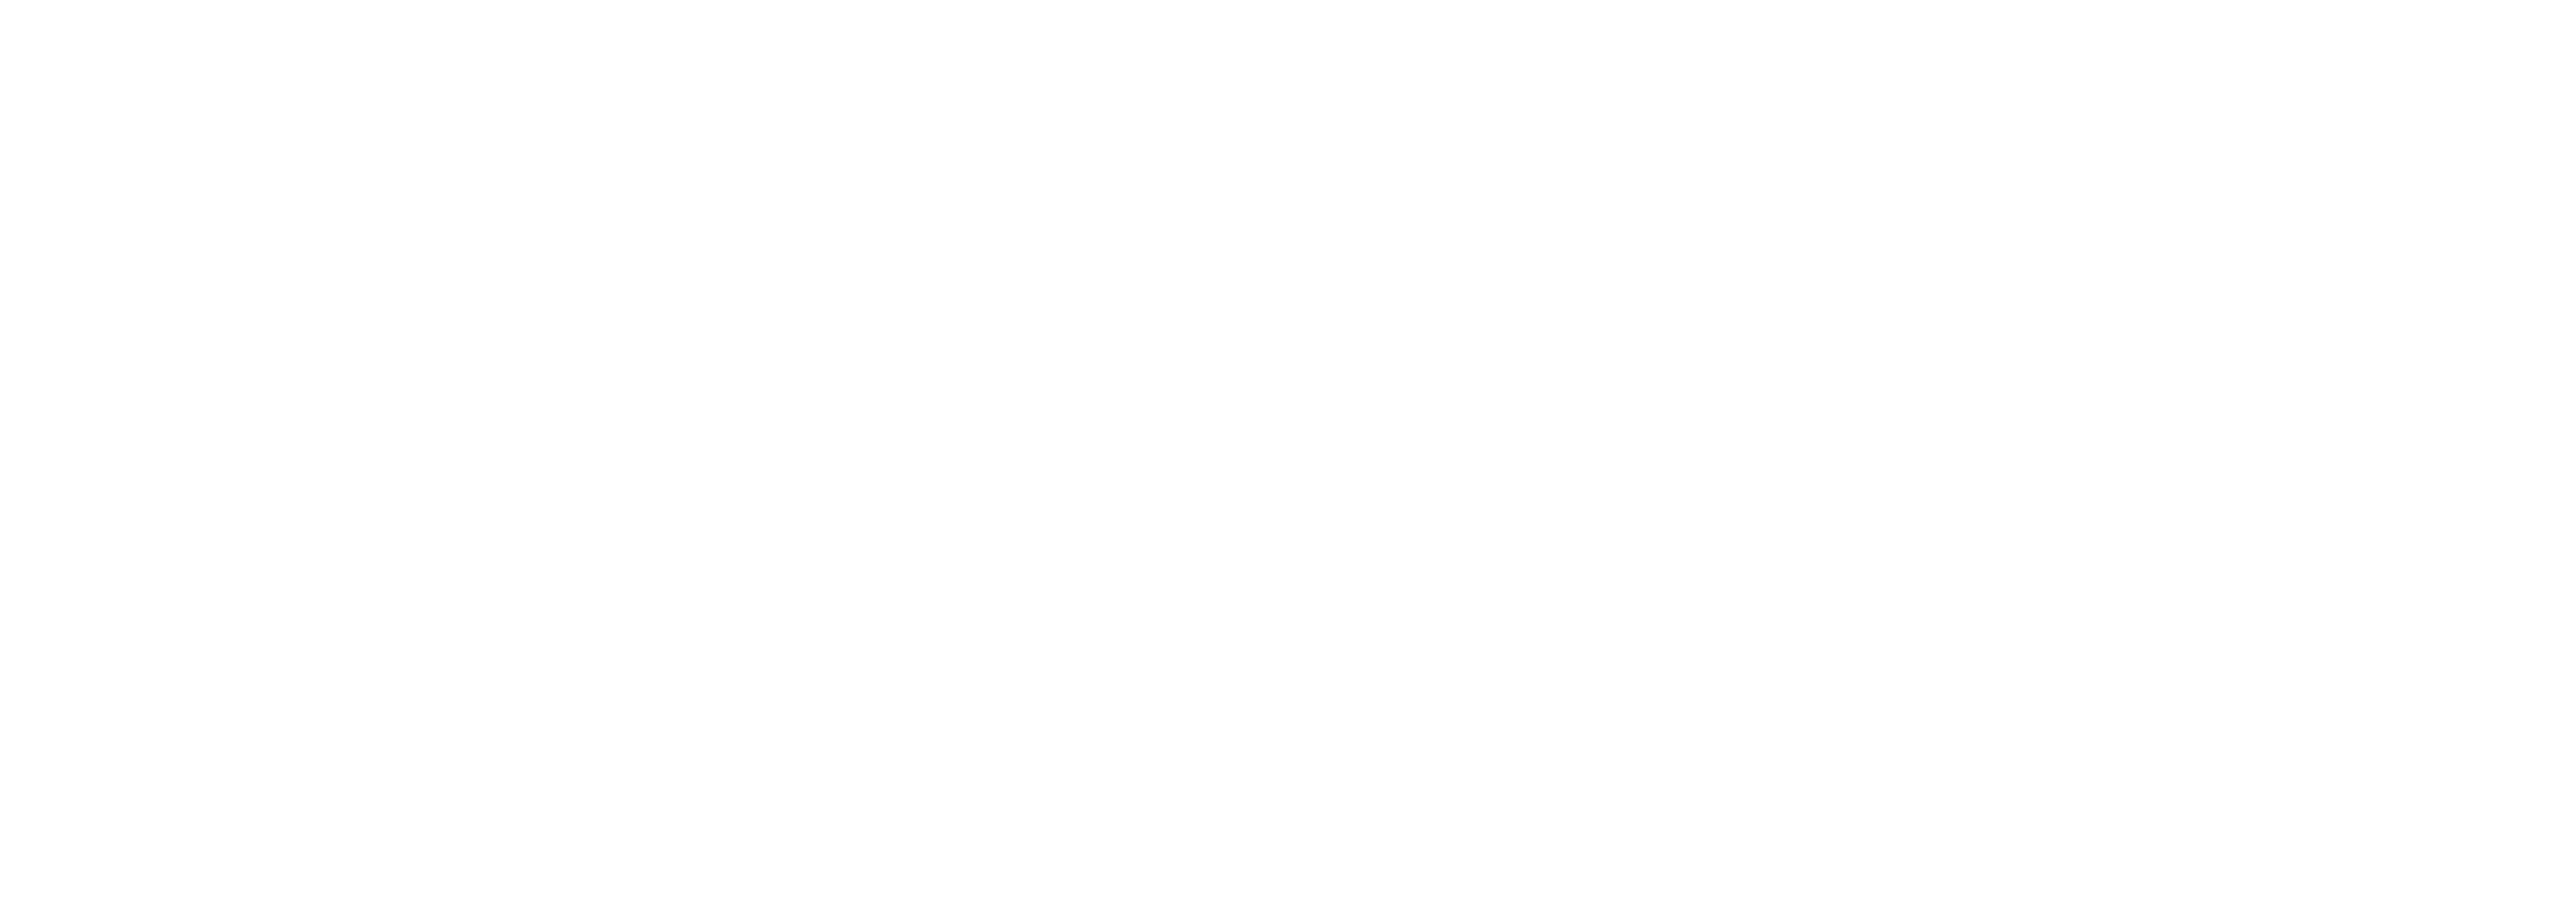 City of Onkaparinga